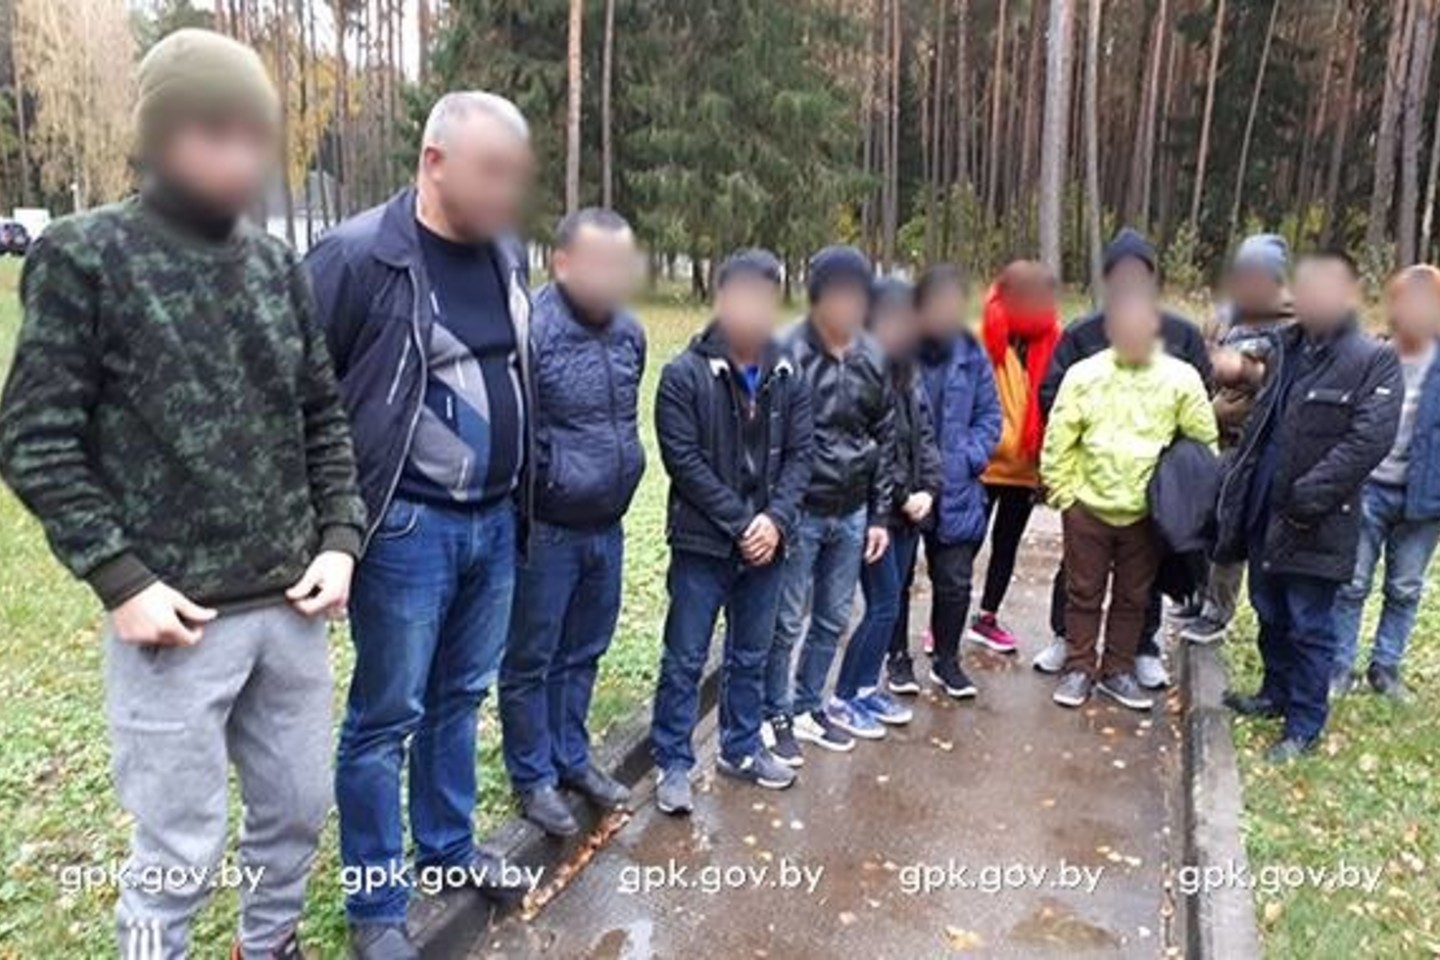  Baltarusijos pasieniečiai sučiupo į Lietuvą vykusią stambią nelegalų grupę.<br> Facebook/Baltarusijos pasieniečių nuotr.